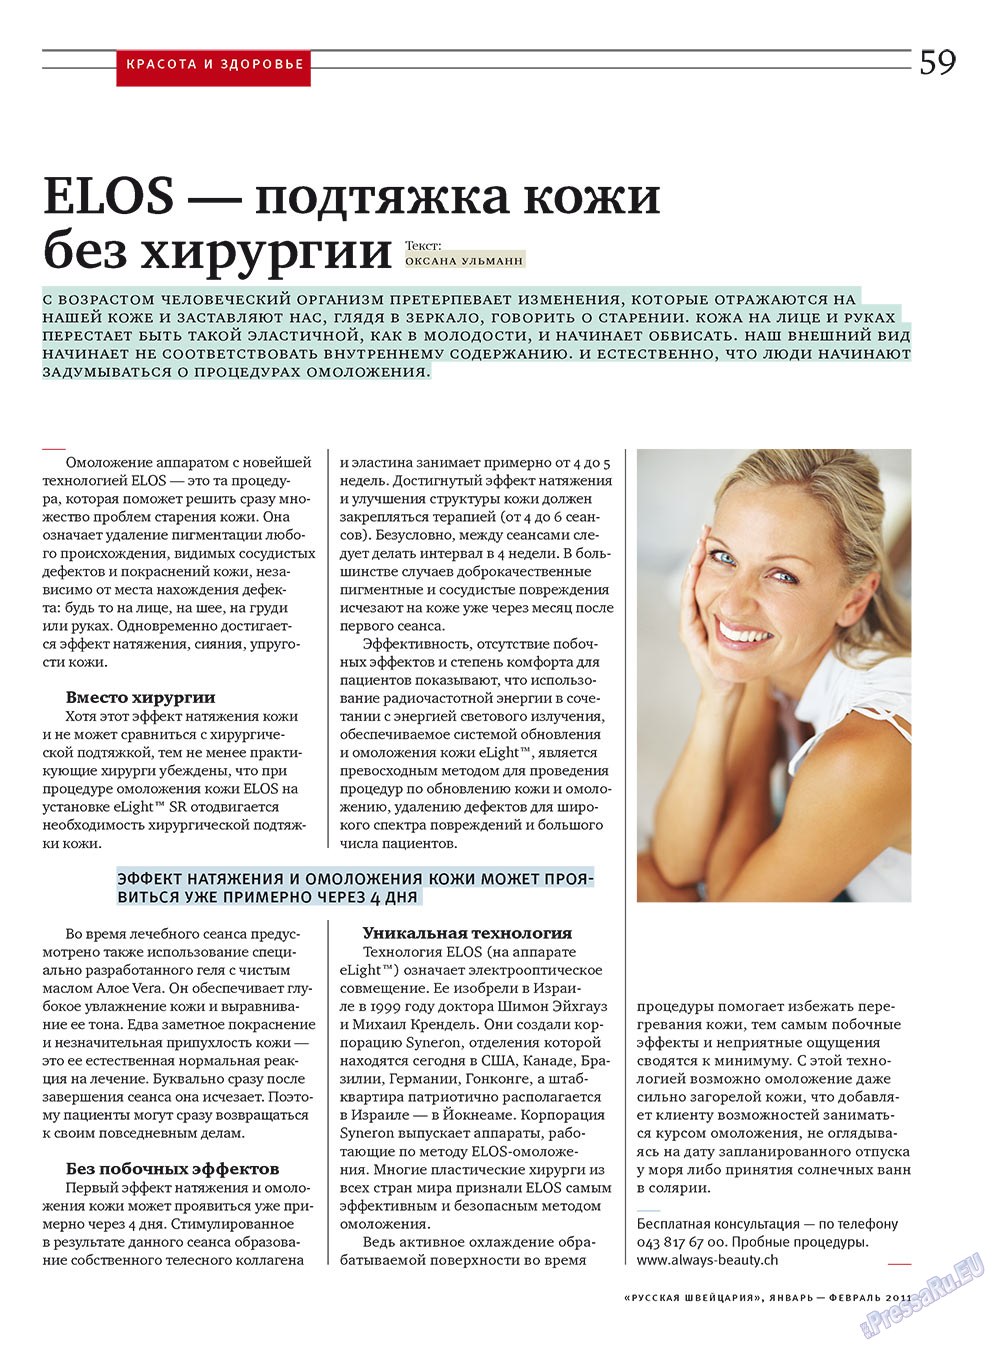 Русская Швейцария, журнал. 2011 №1 стр.59